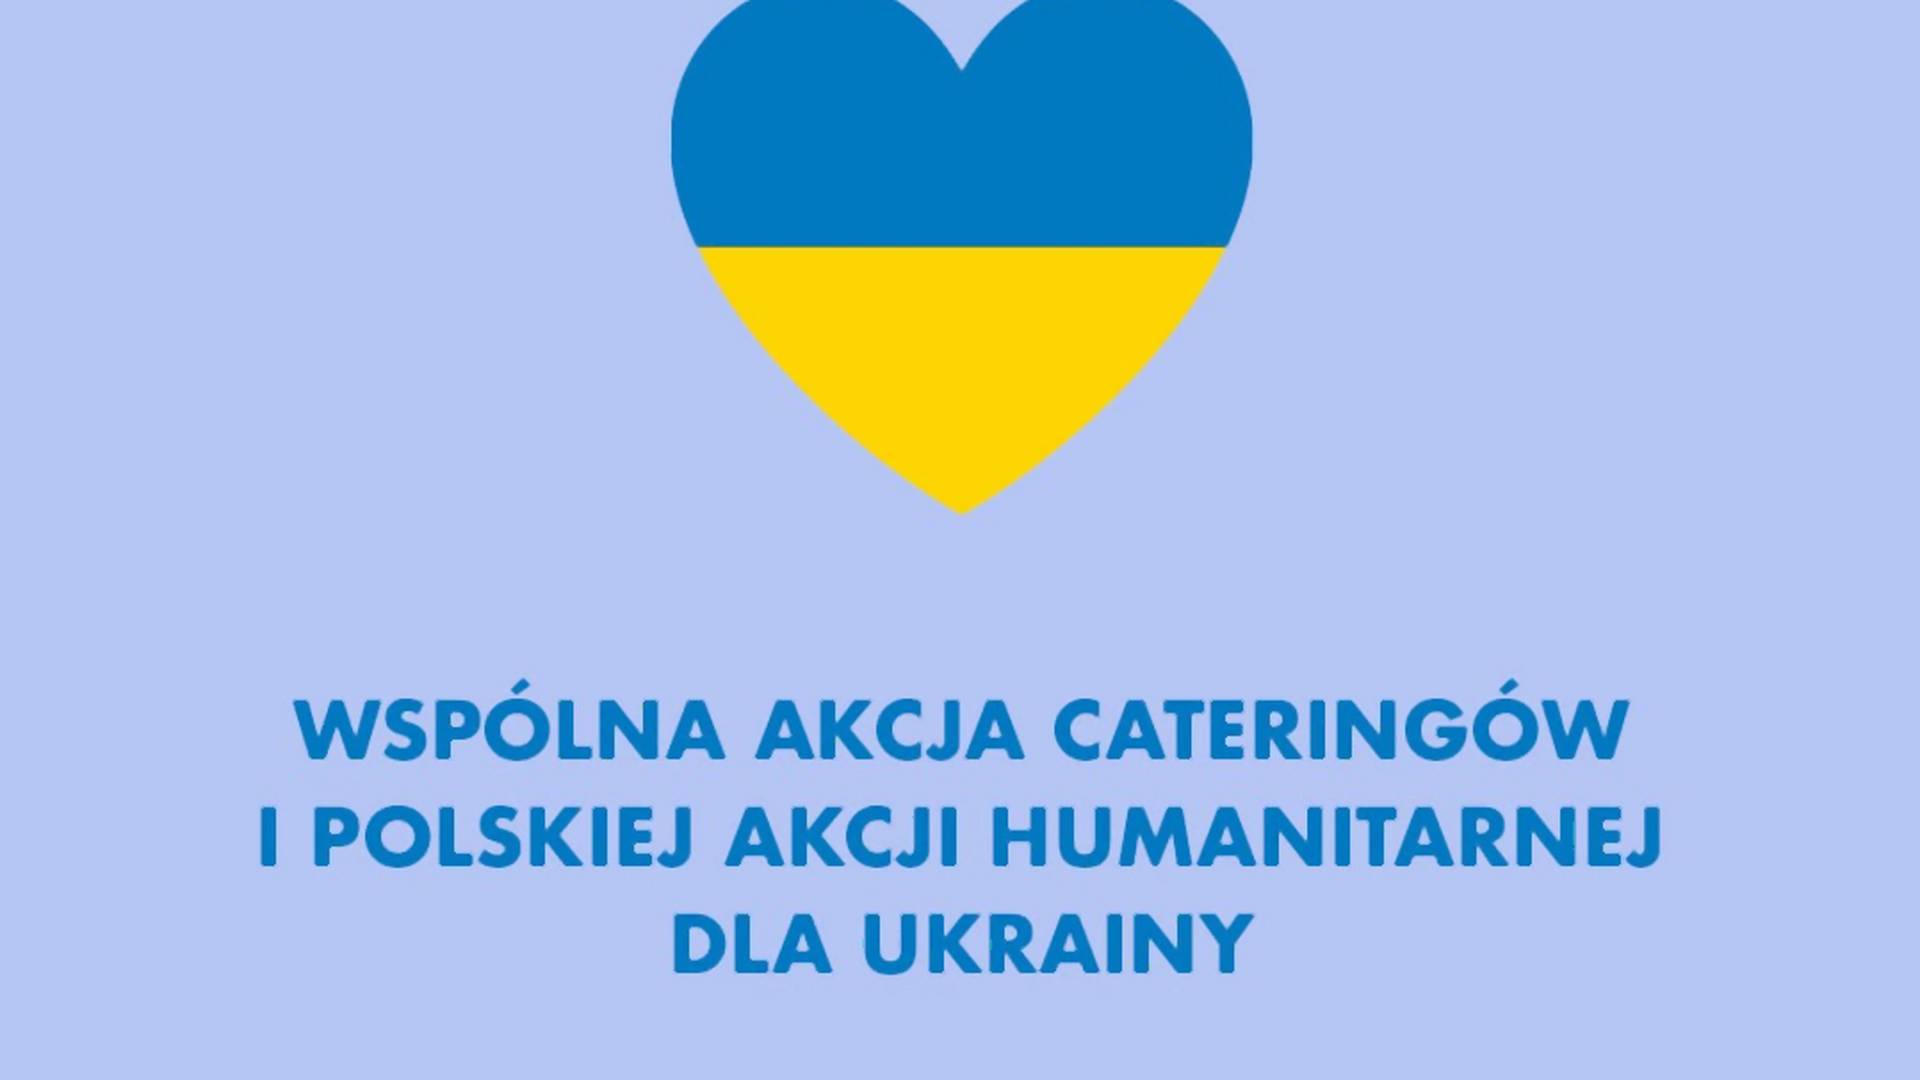 "Na co dzień zdrowo rywalizujemy, teraz zdrowo pomagamy Ukrainie"